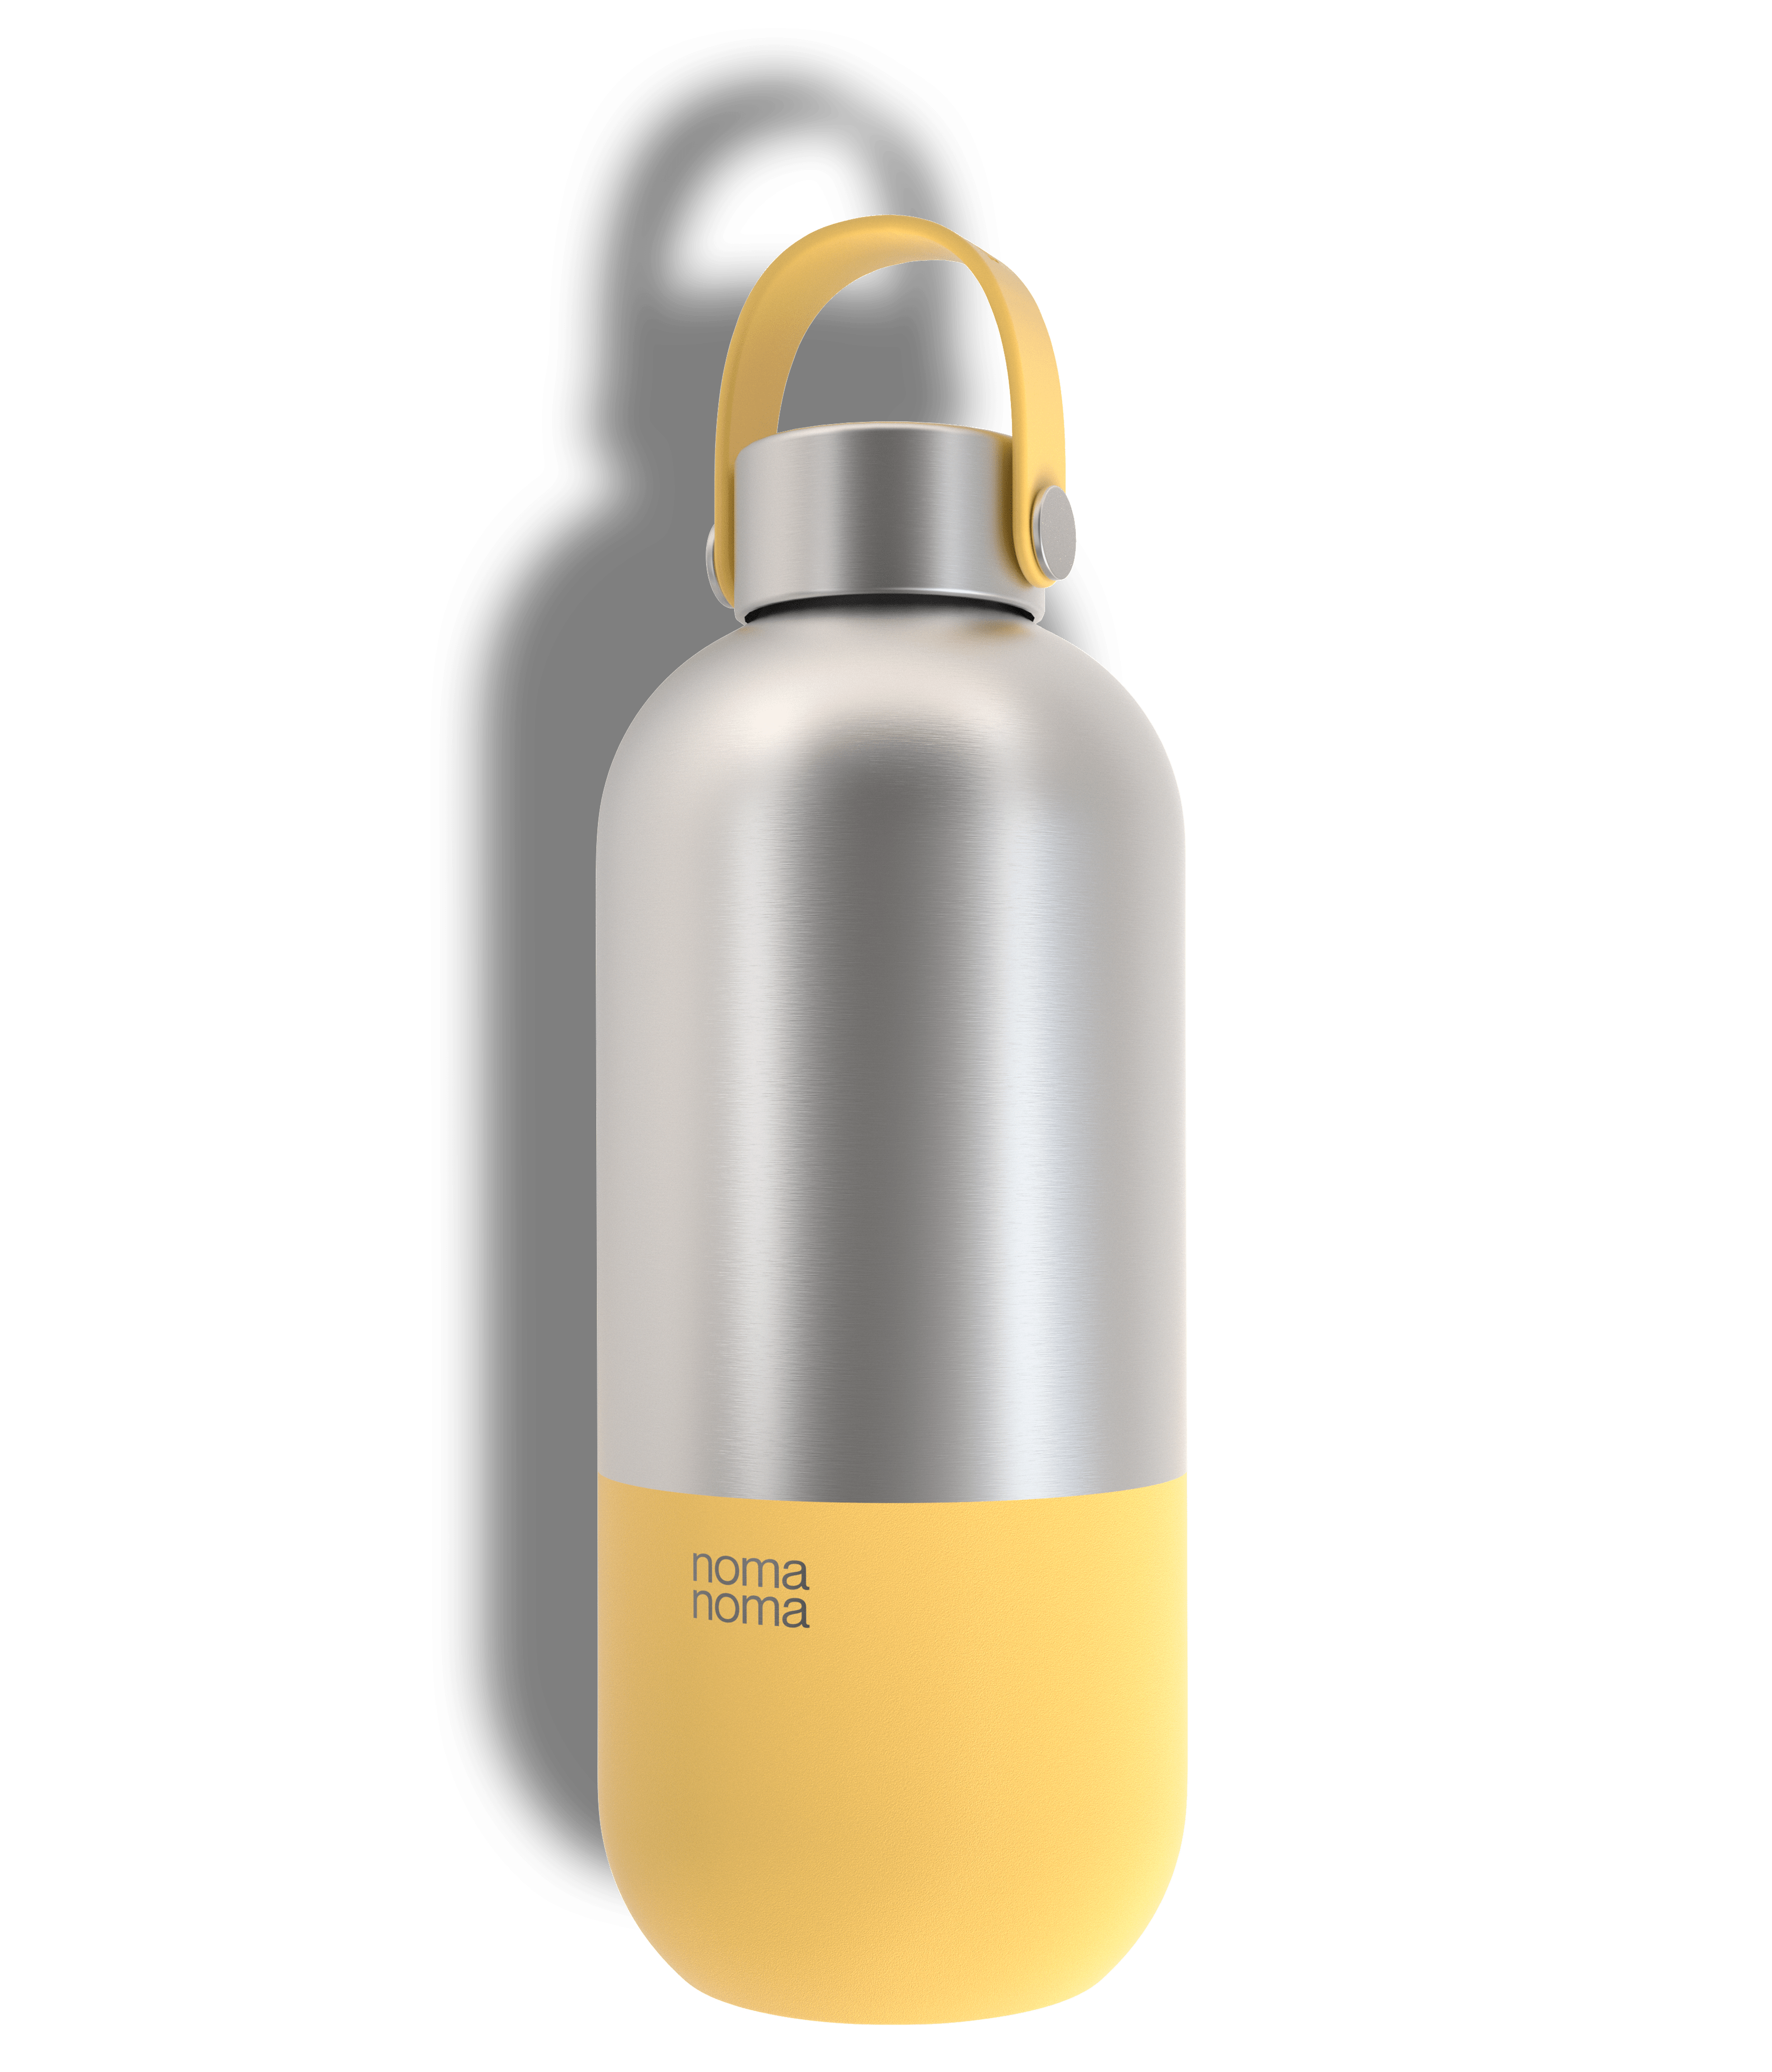 Die noma noma Thermotrinkflasche in drei Größen und verschiedenen Farben